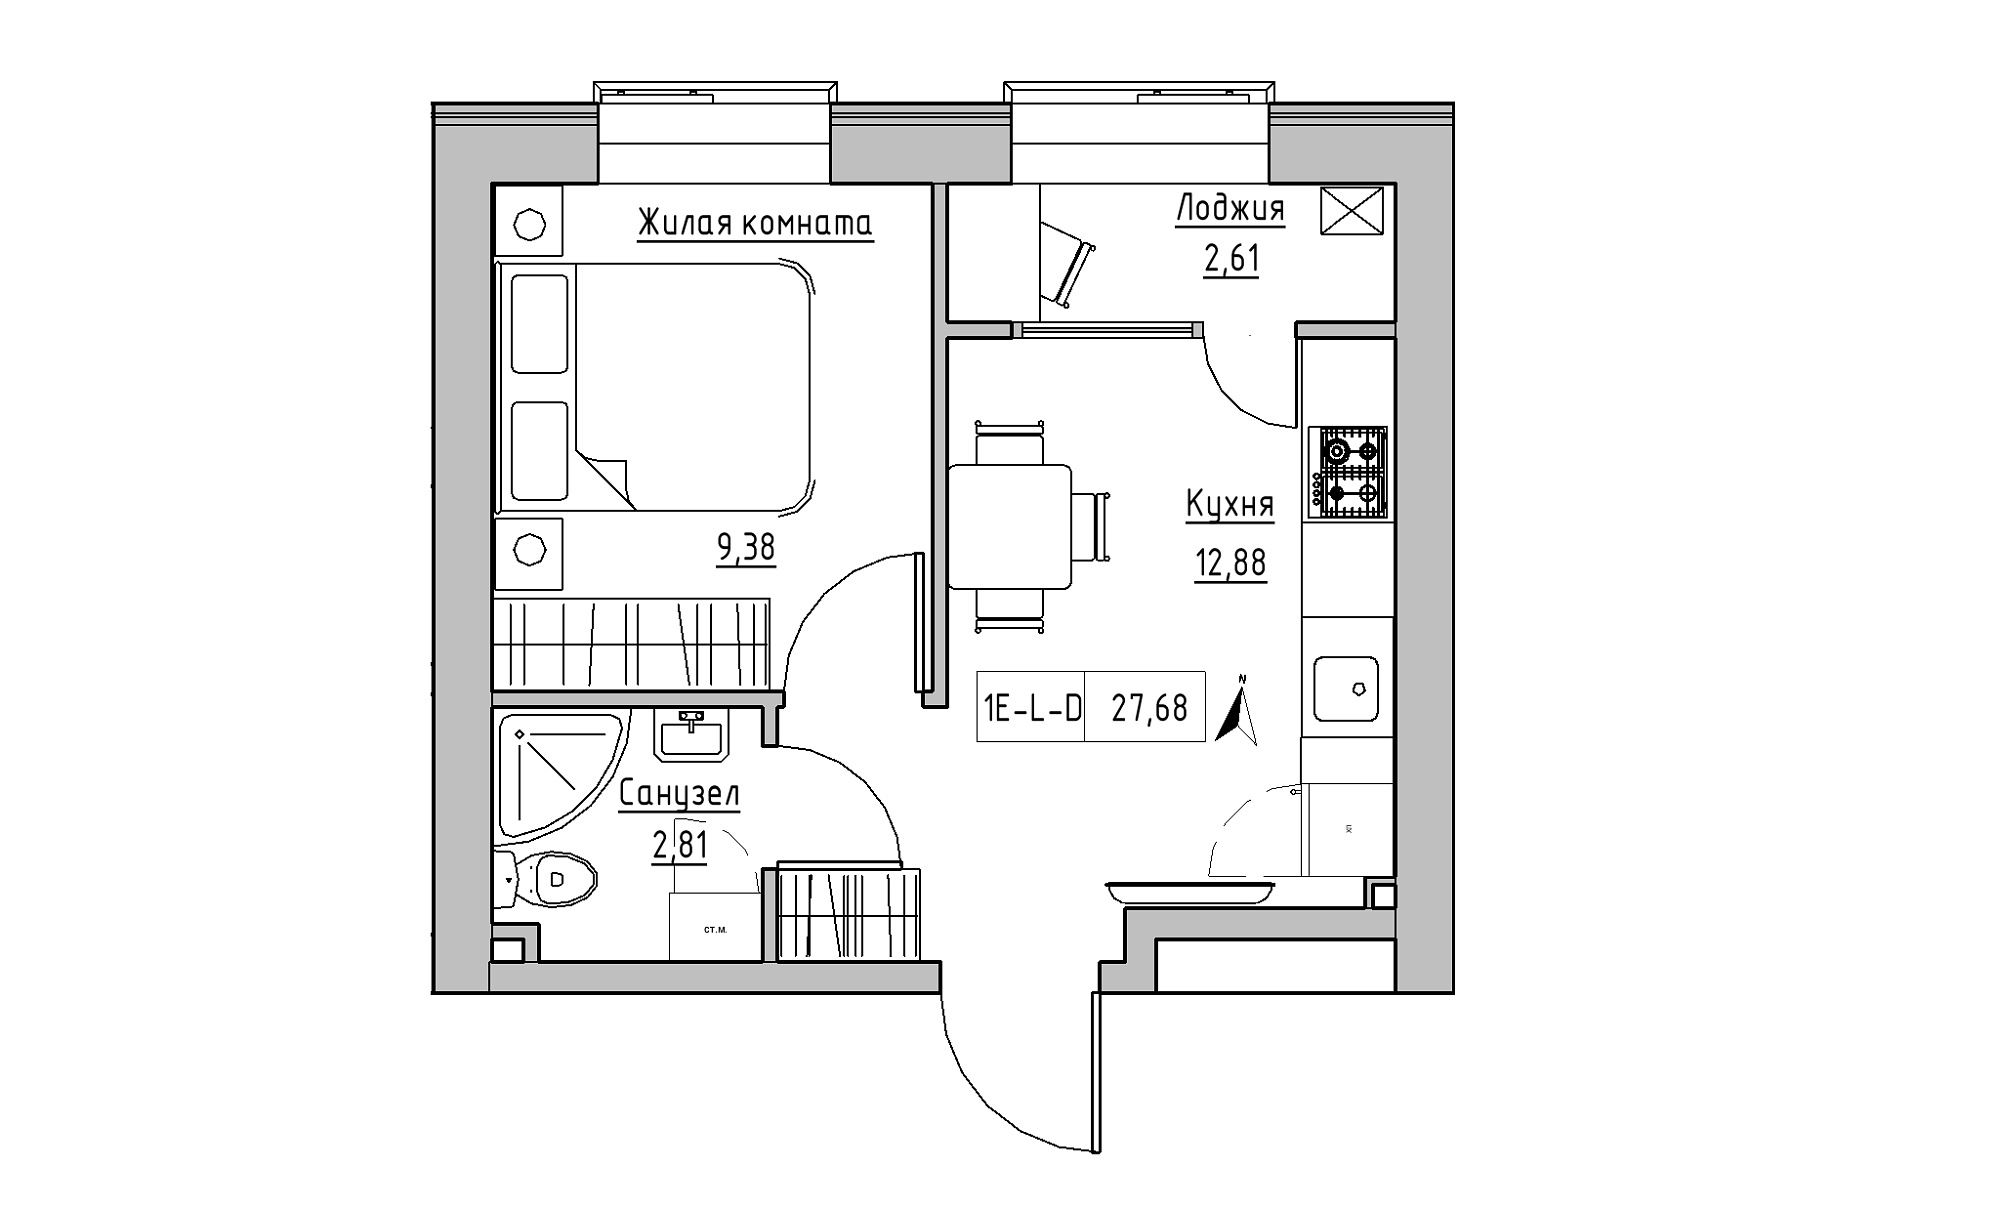 Планировка 1-к квартира площей 27.68м2, KS-016-02/0001.